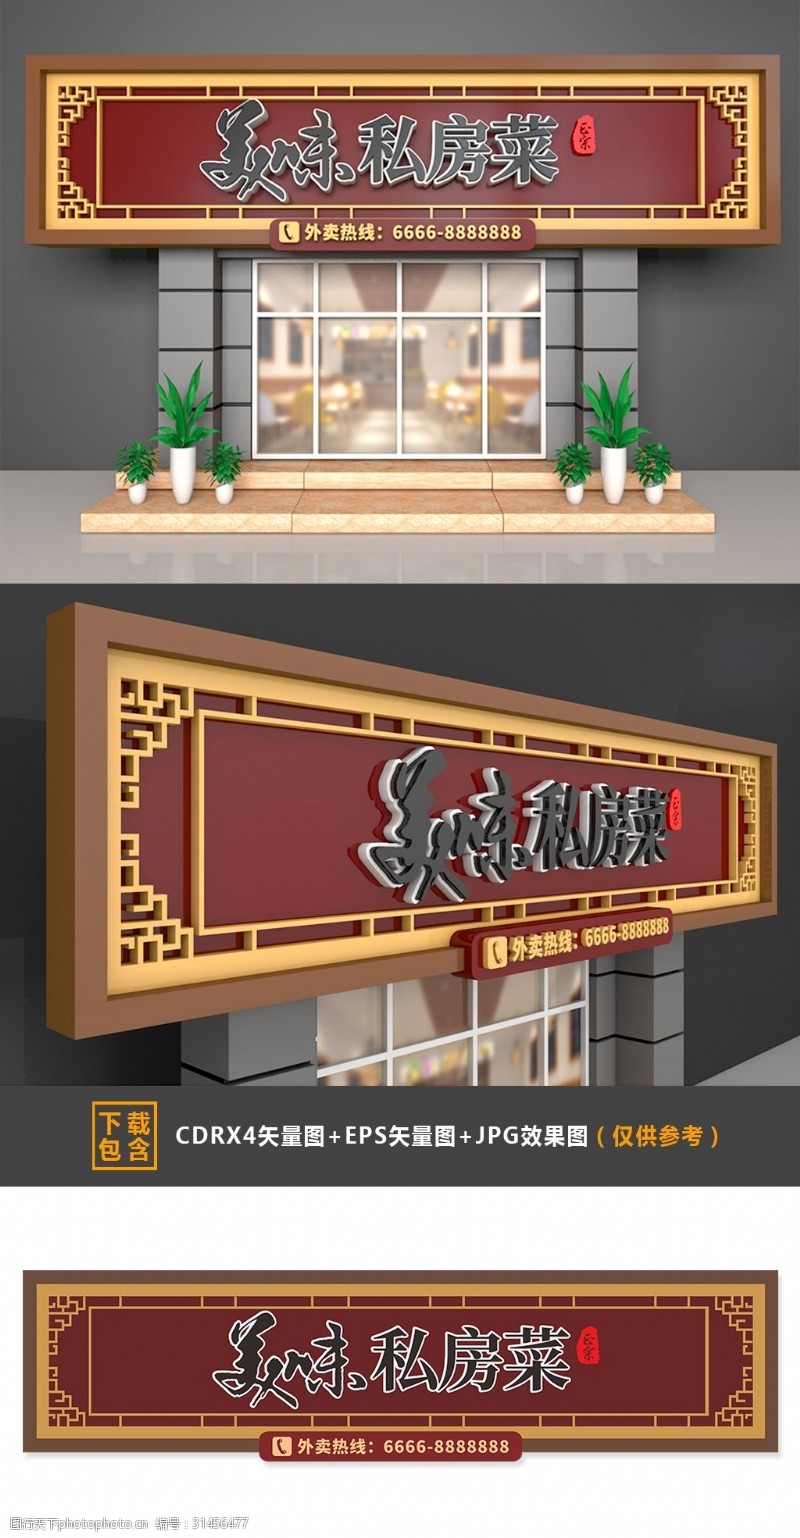 大型3D立体复古中式私房菜门头招牌设计